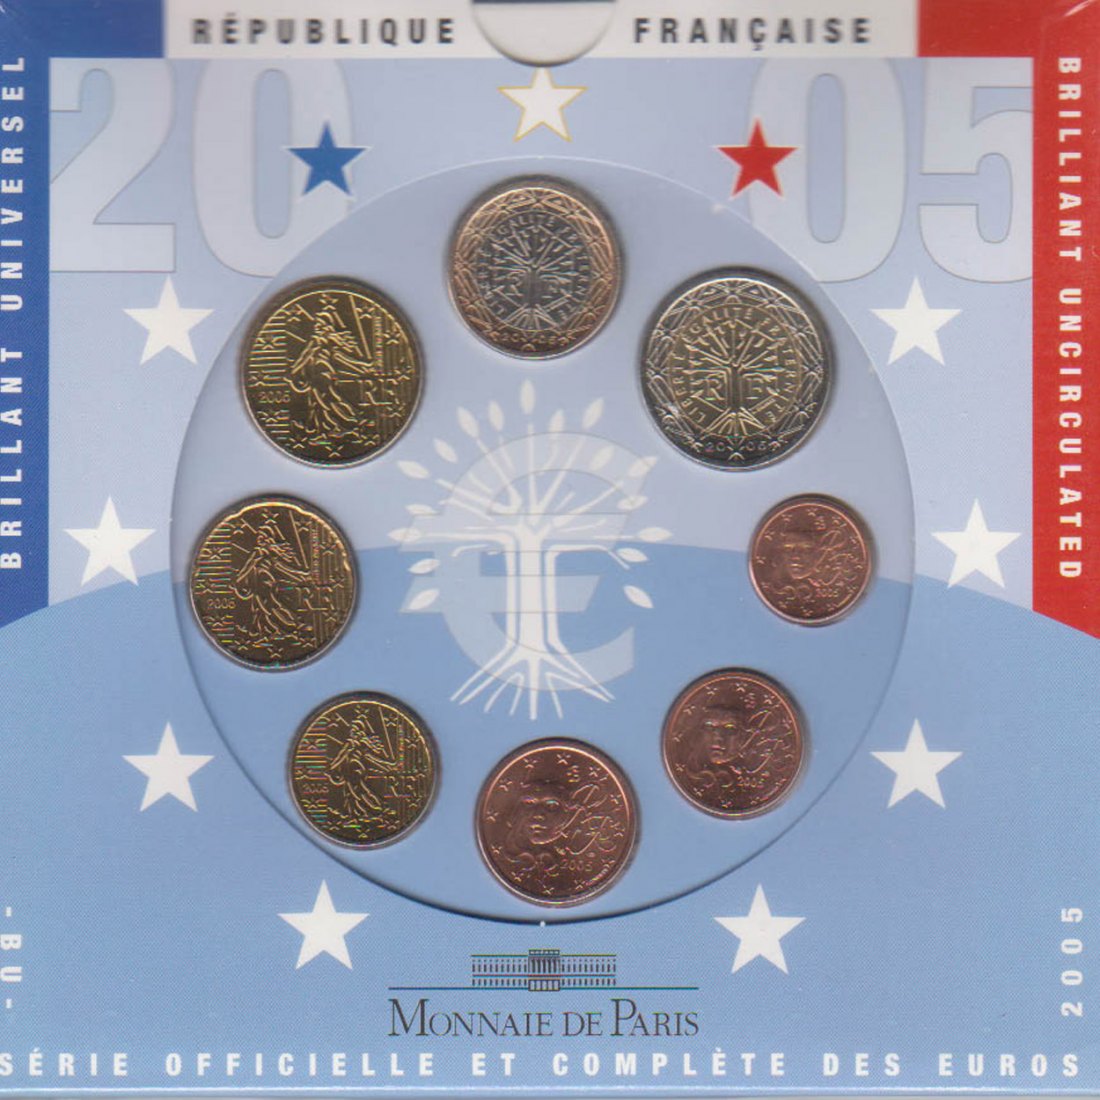  Offiz. Euo KMS Frankreich 2005 4 Münzen nur in den offiz. Foldern   